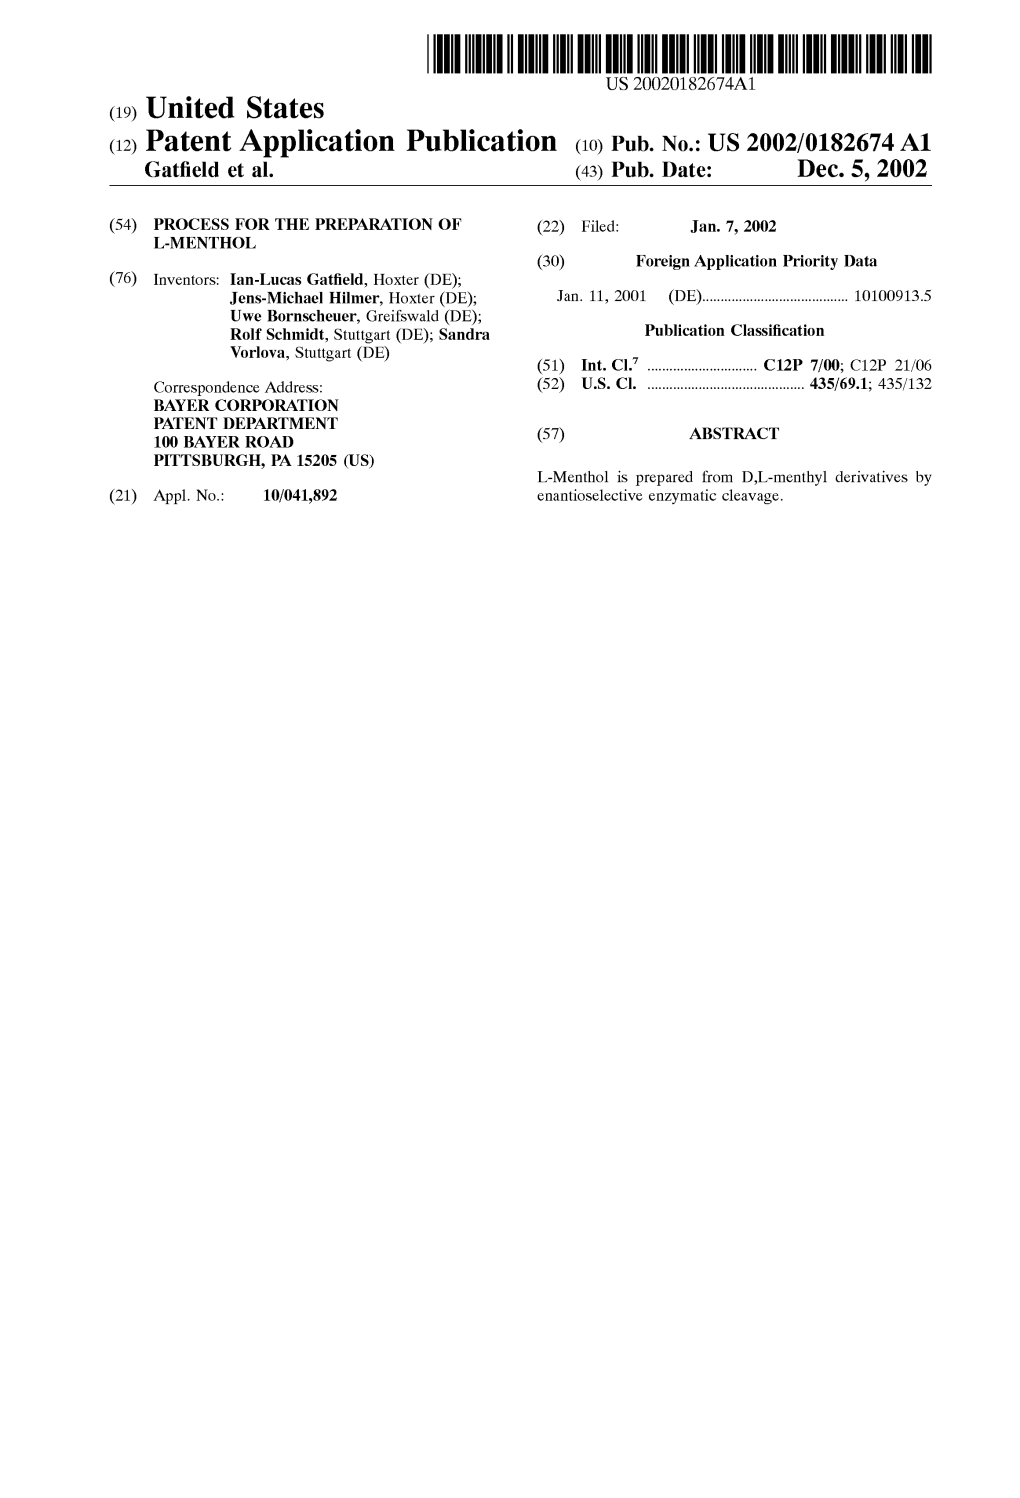 (12) Patent Application Publication (10) Pub. No.: US 2002/0182674 A1 Gatfield Et Al